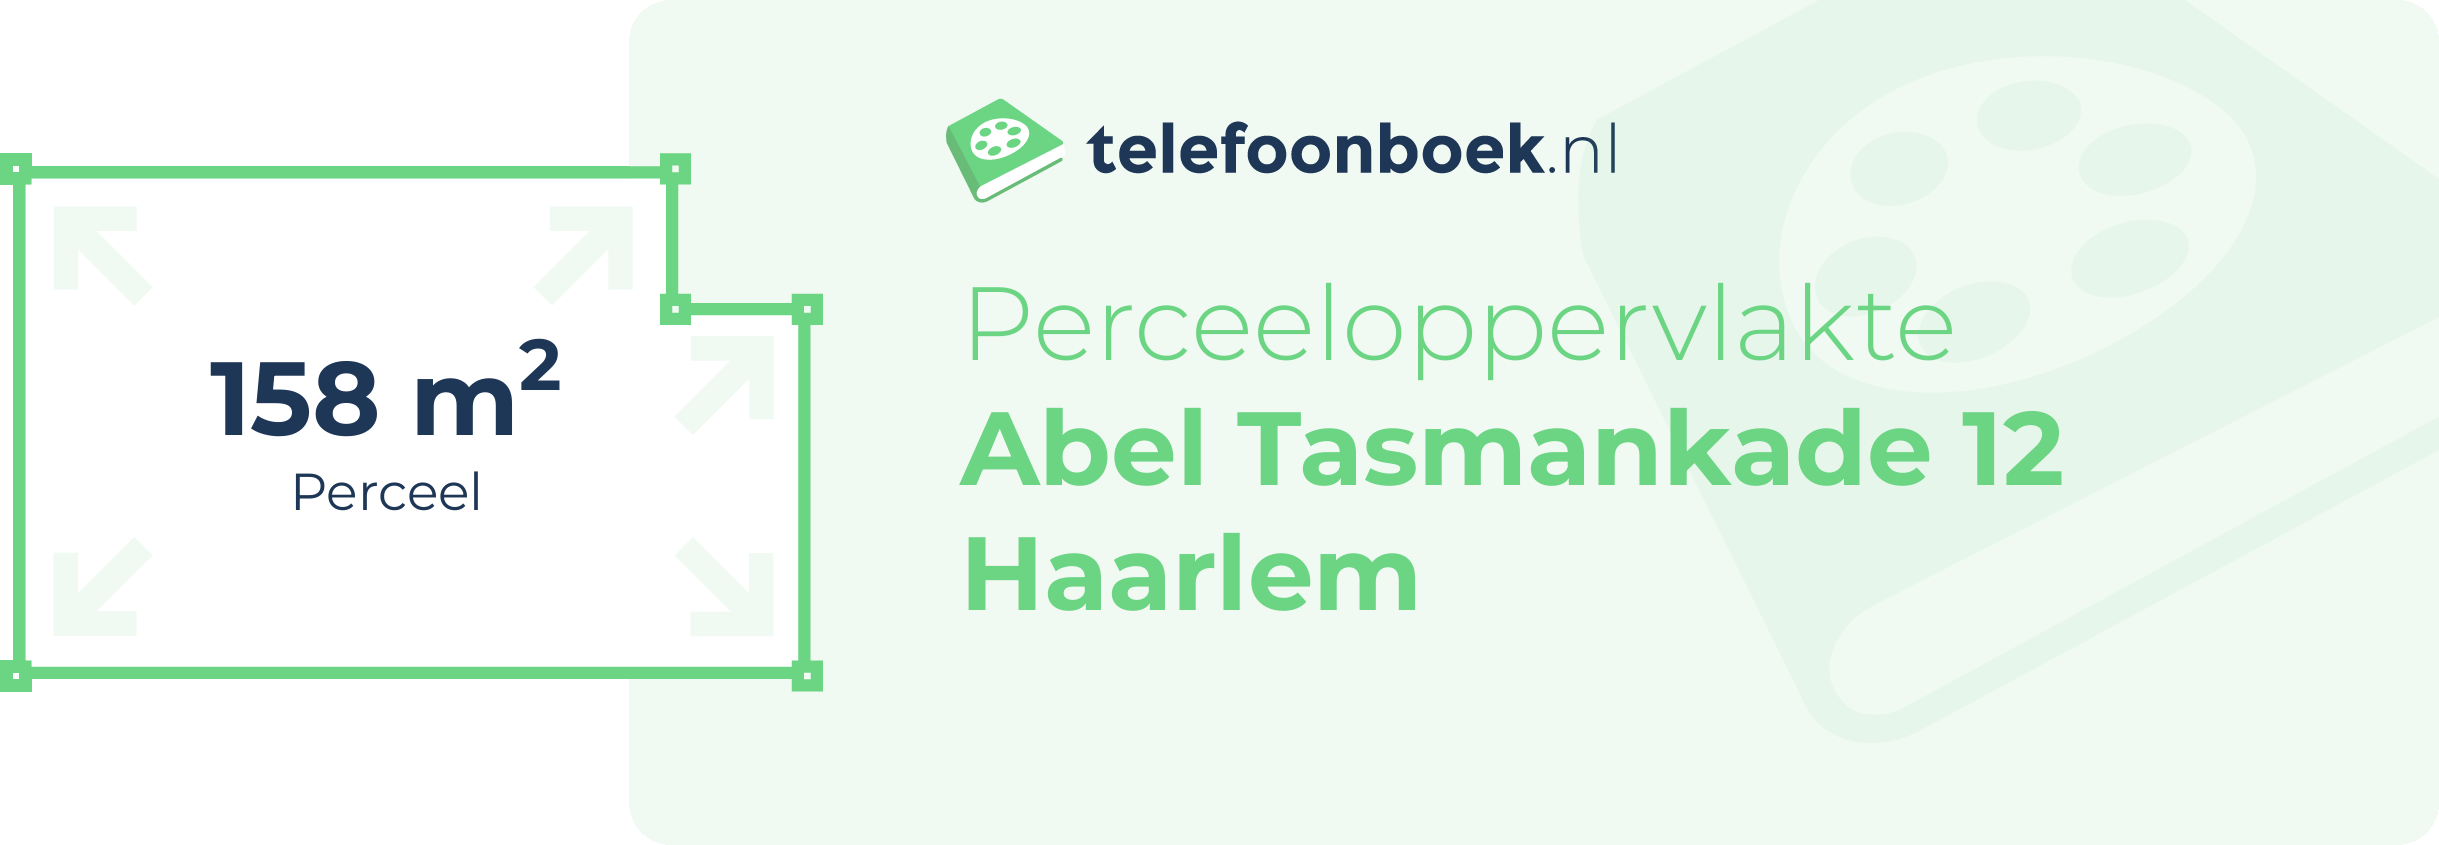 Perceeloppervlakte Abel Tasmankade 12 Haarlem